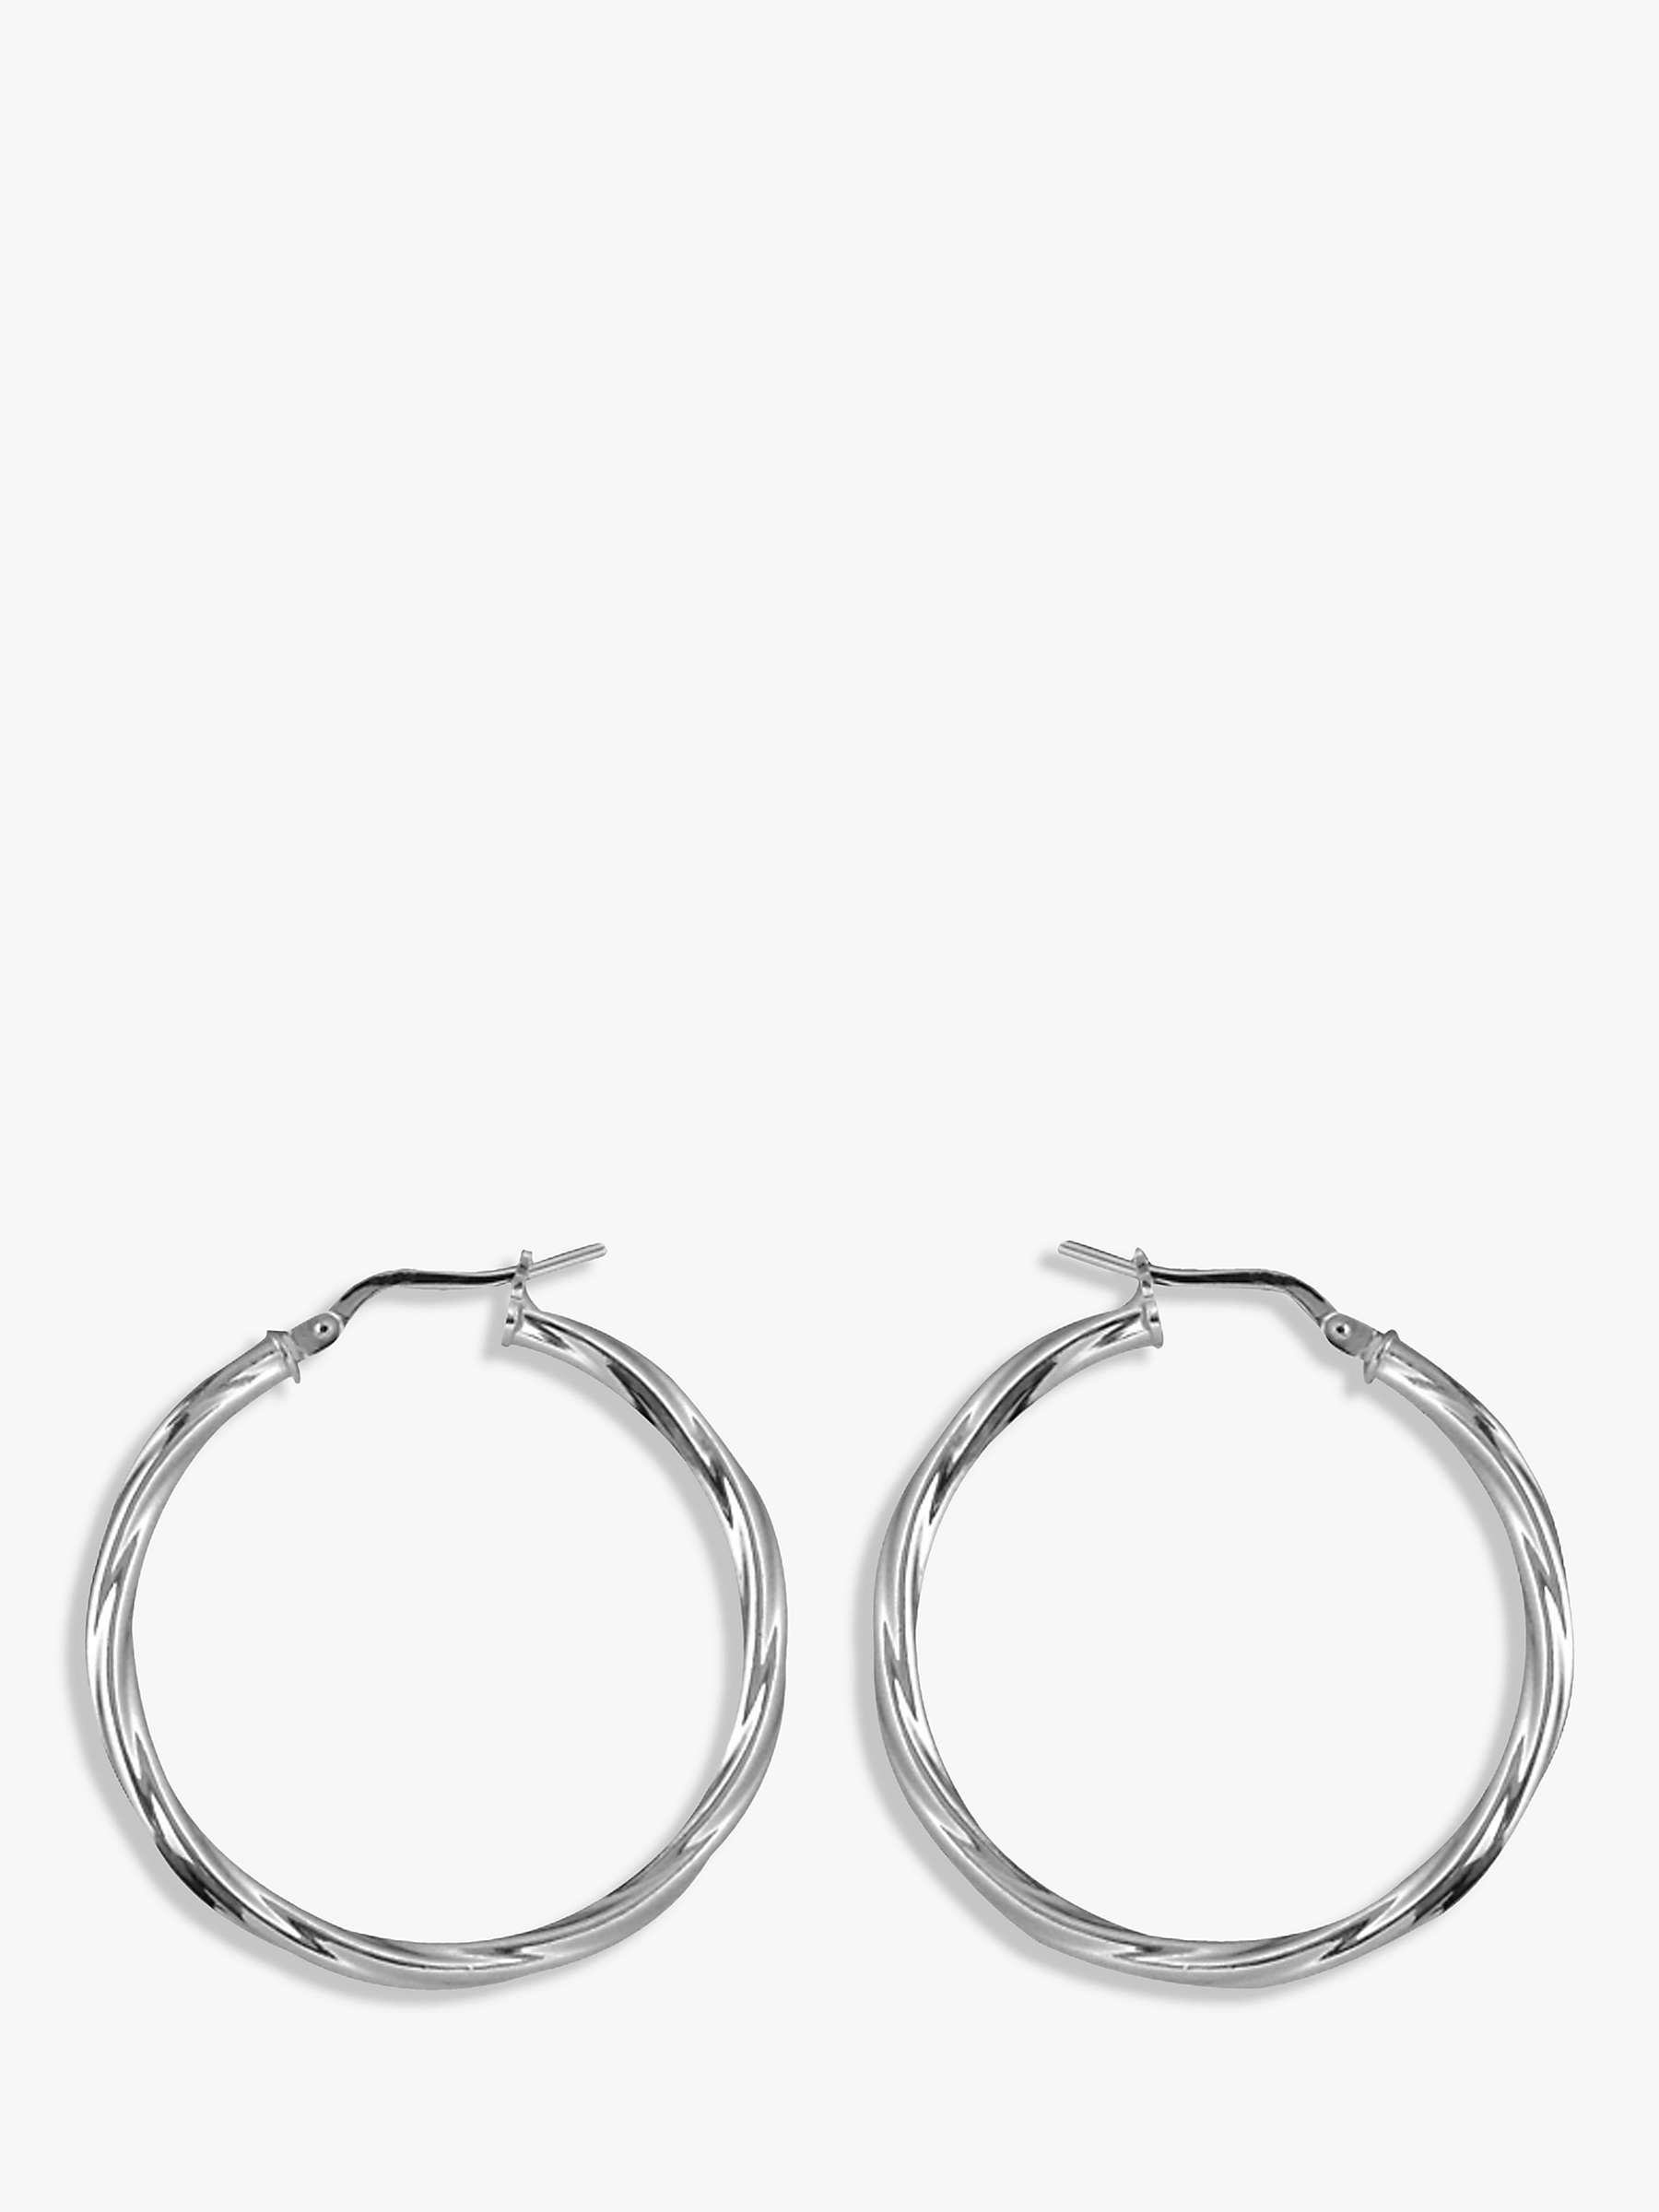 Buy Nina B Twisted Hoop Earrings, Silver Online at johnlewis.com